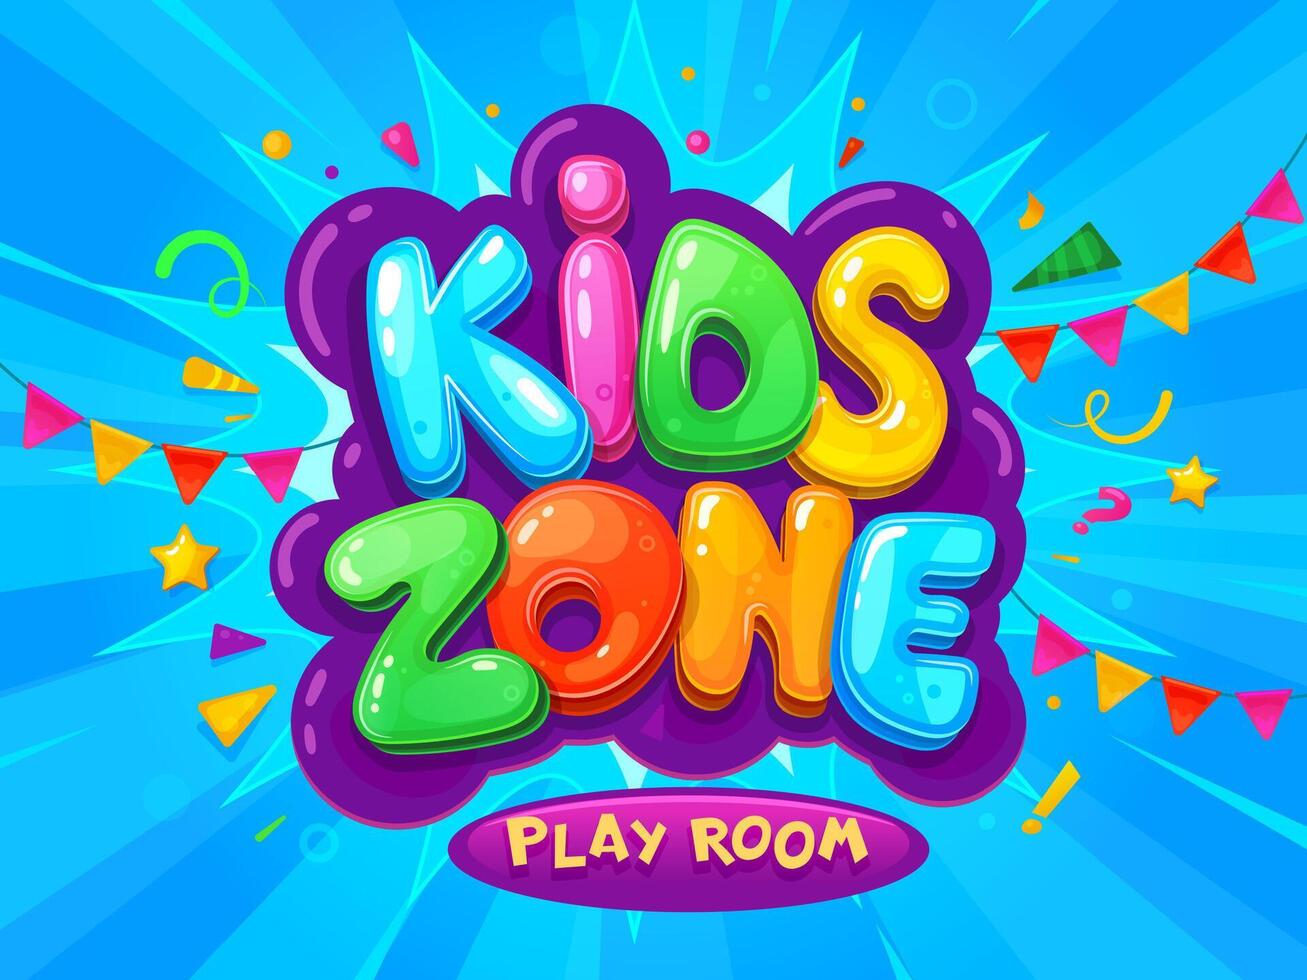 Kid zone banner, children area playground playroom vector